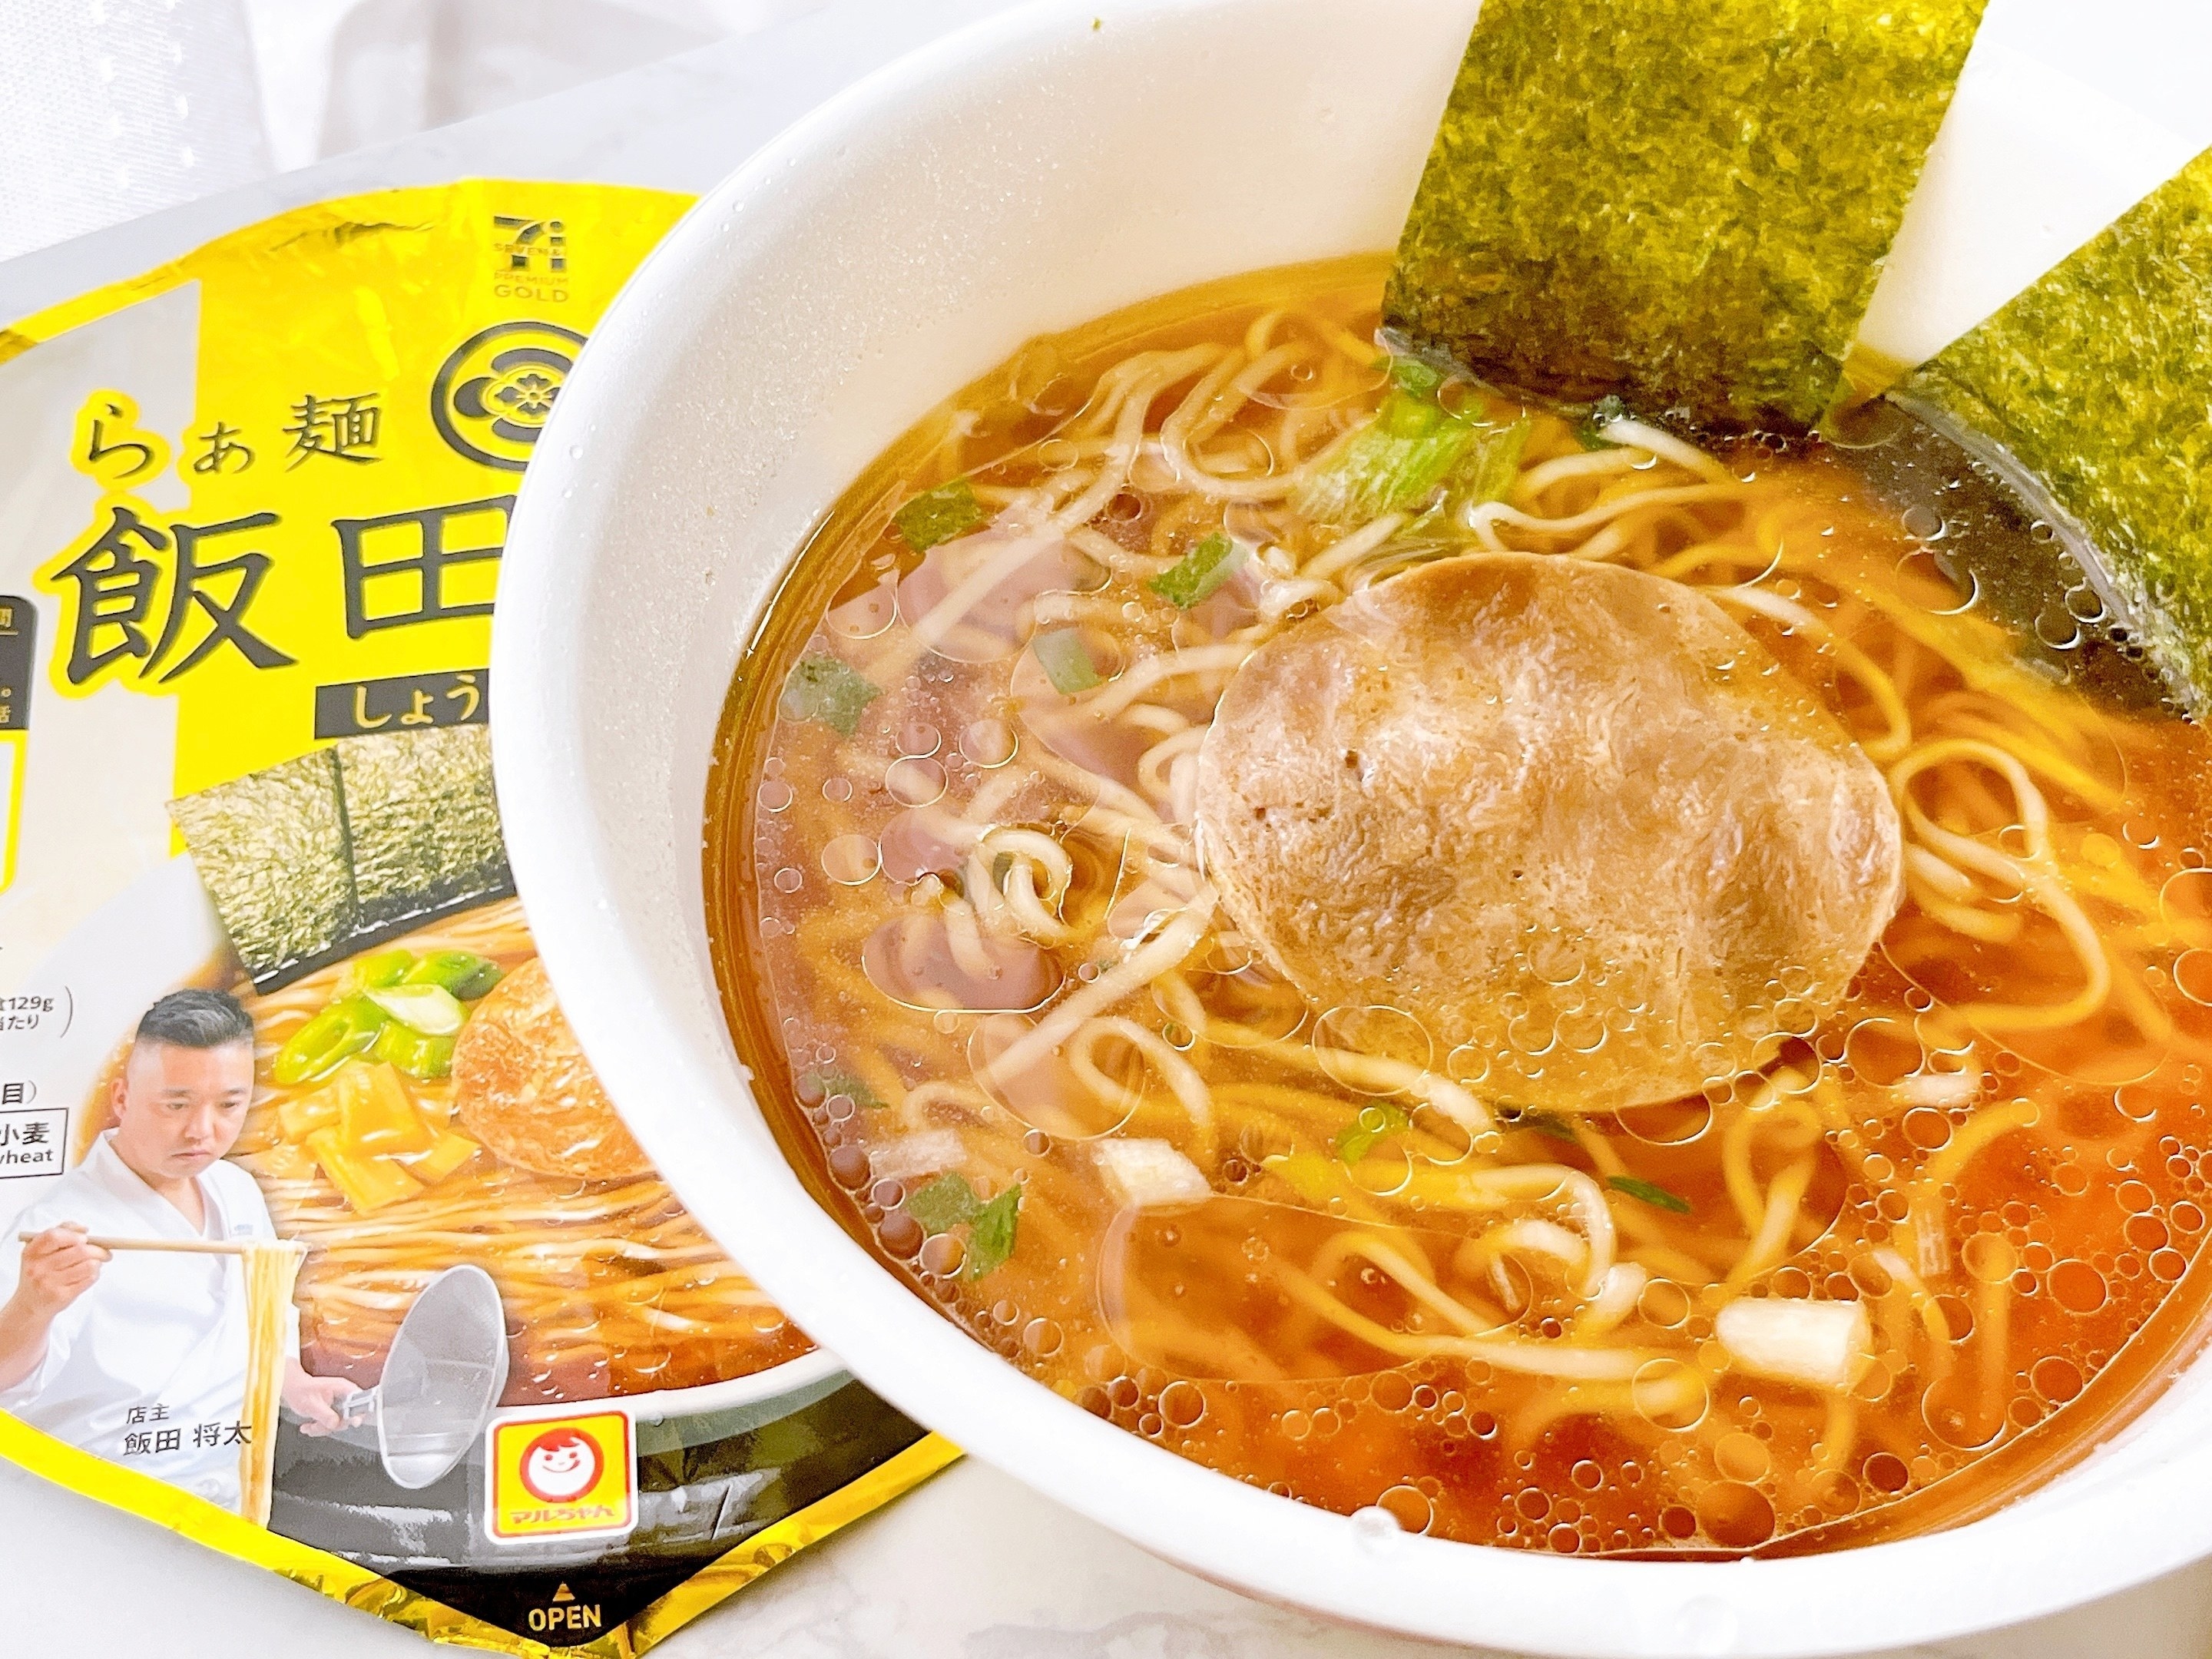 セブンイレブンのカップ麺のオススメ「飯田商店 しょうゆらぁ麺」スープがうまい